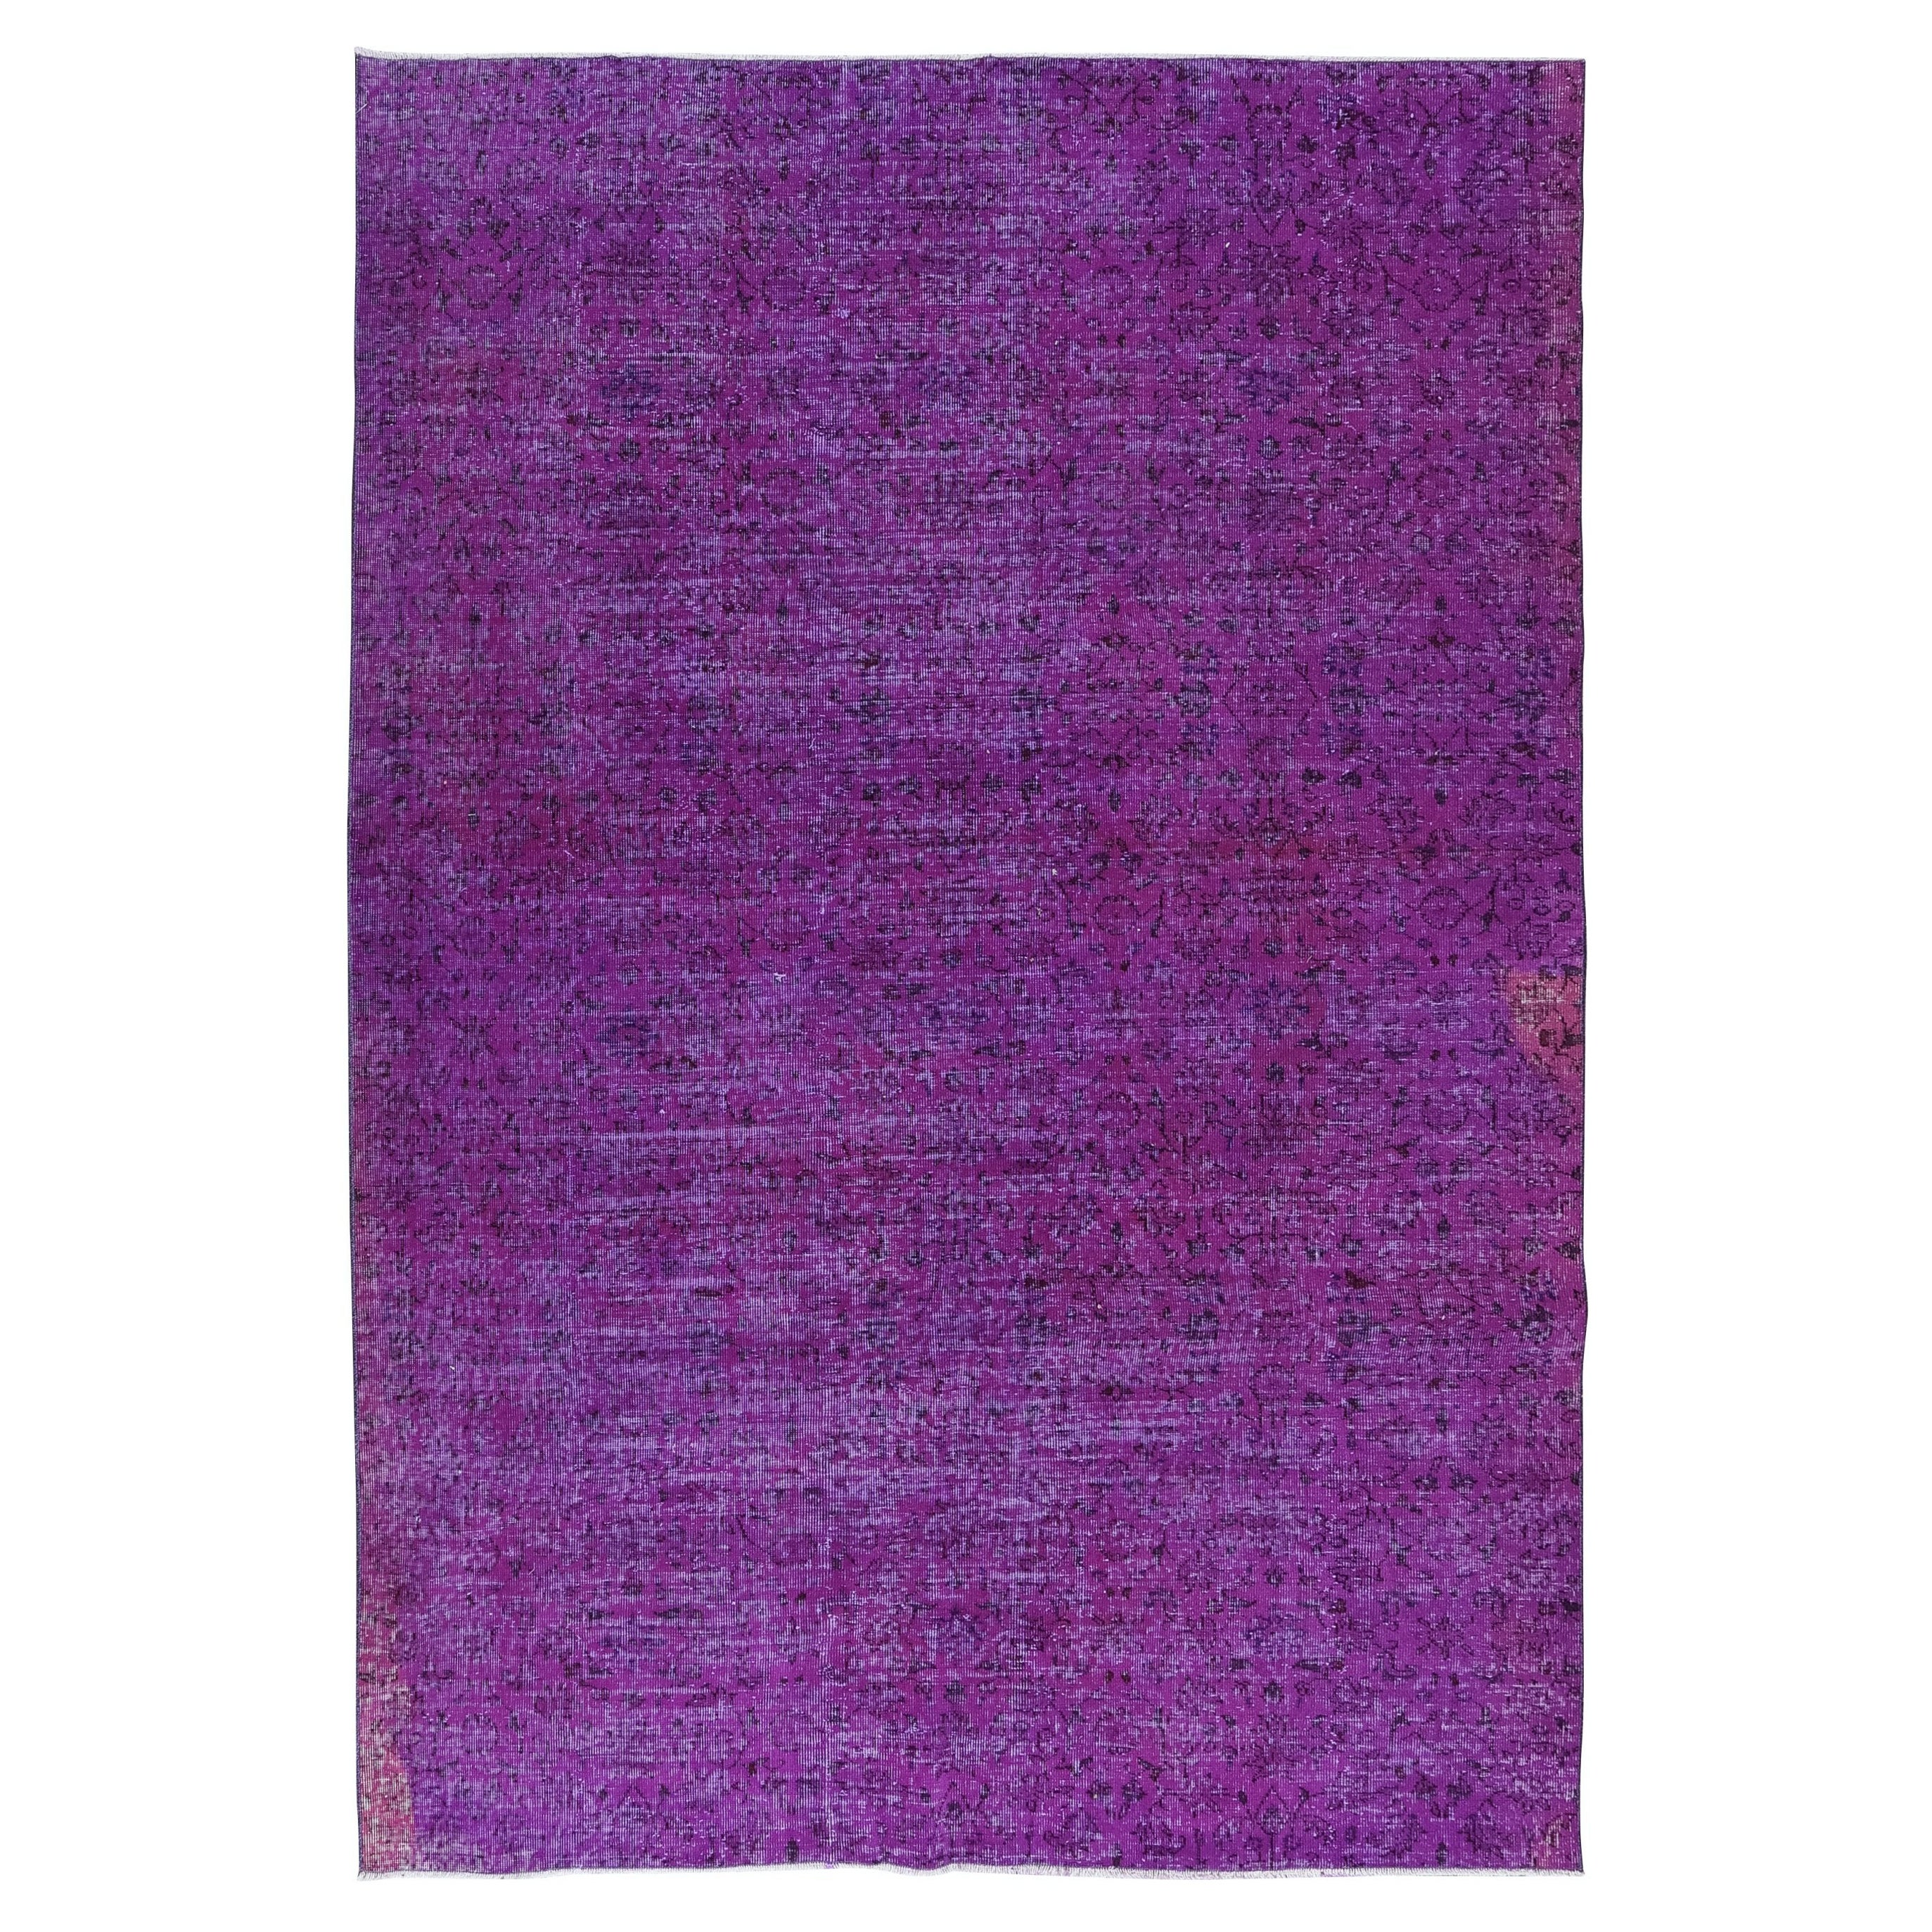 6.8x10 Ft Hand Made Floral Pattern Large Purple Rug. Ideal für moderne Inneneinrichtungen